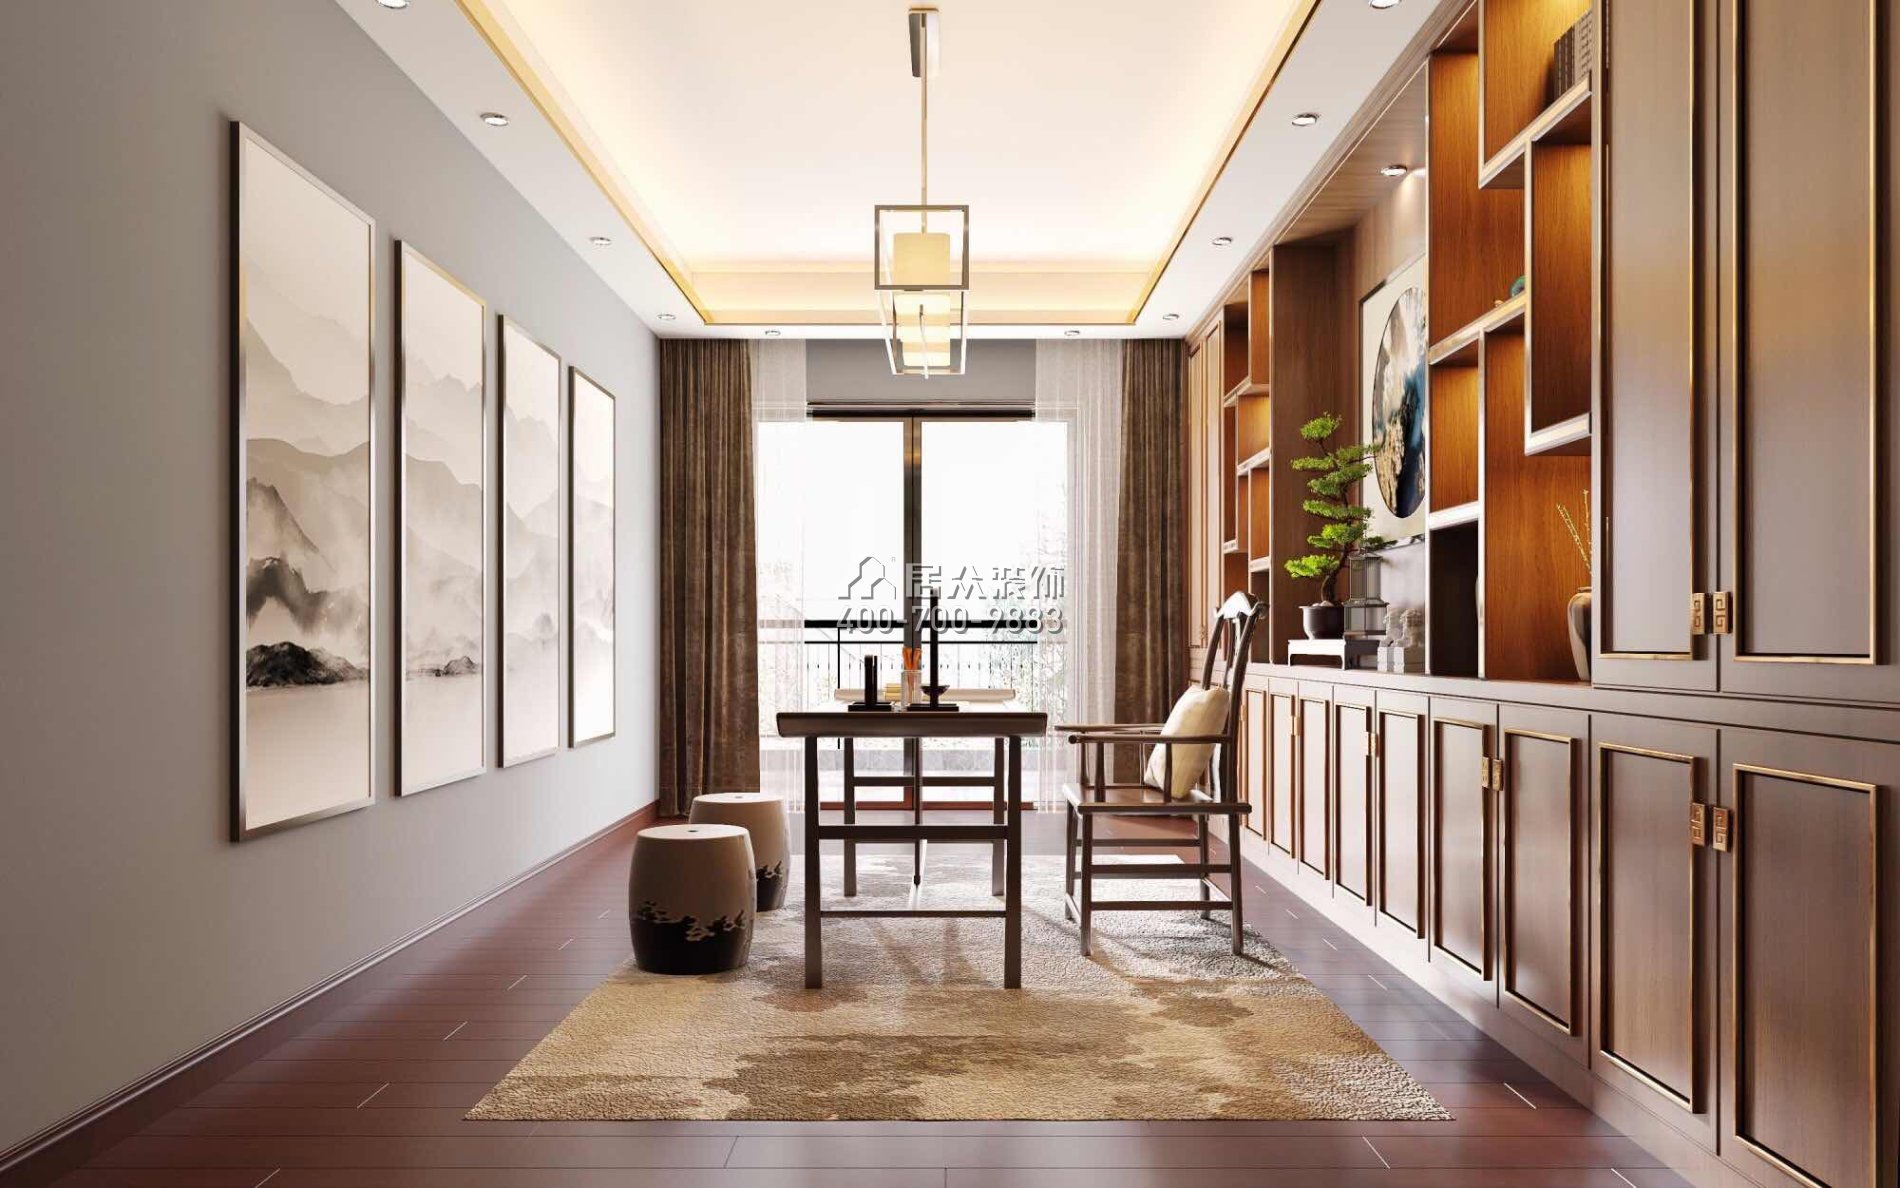 格力广场三期216平方米中式风格平层户型客厅装修效果图